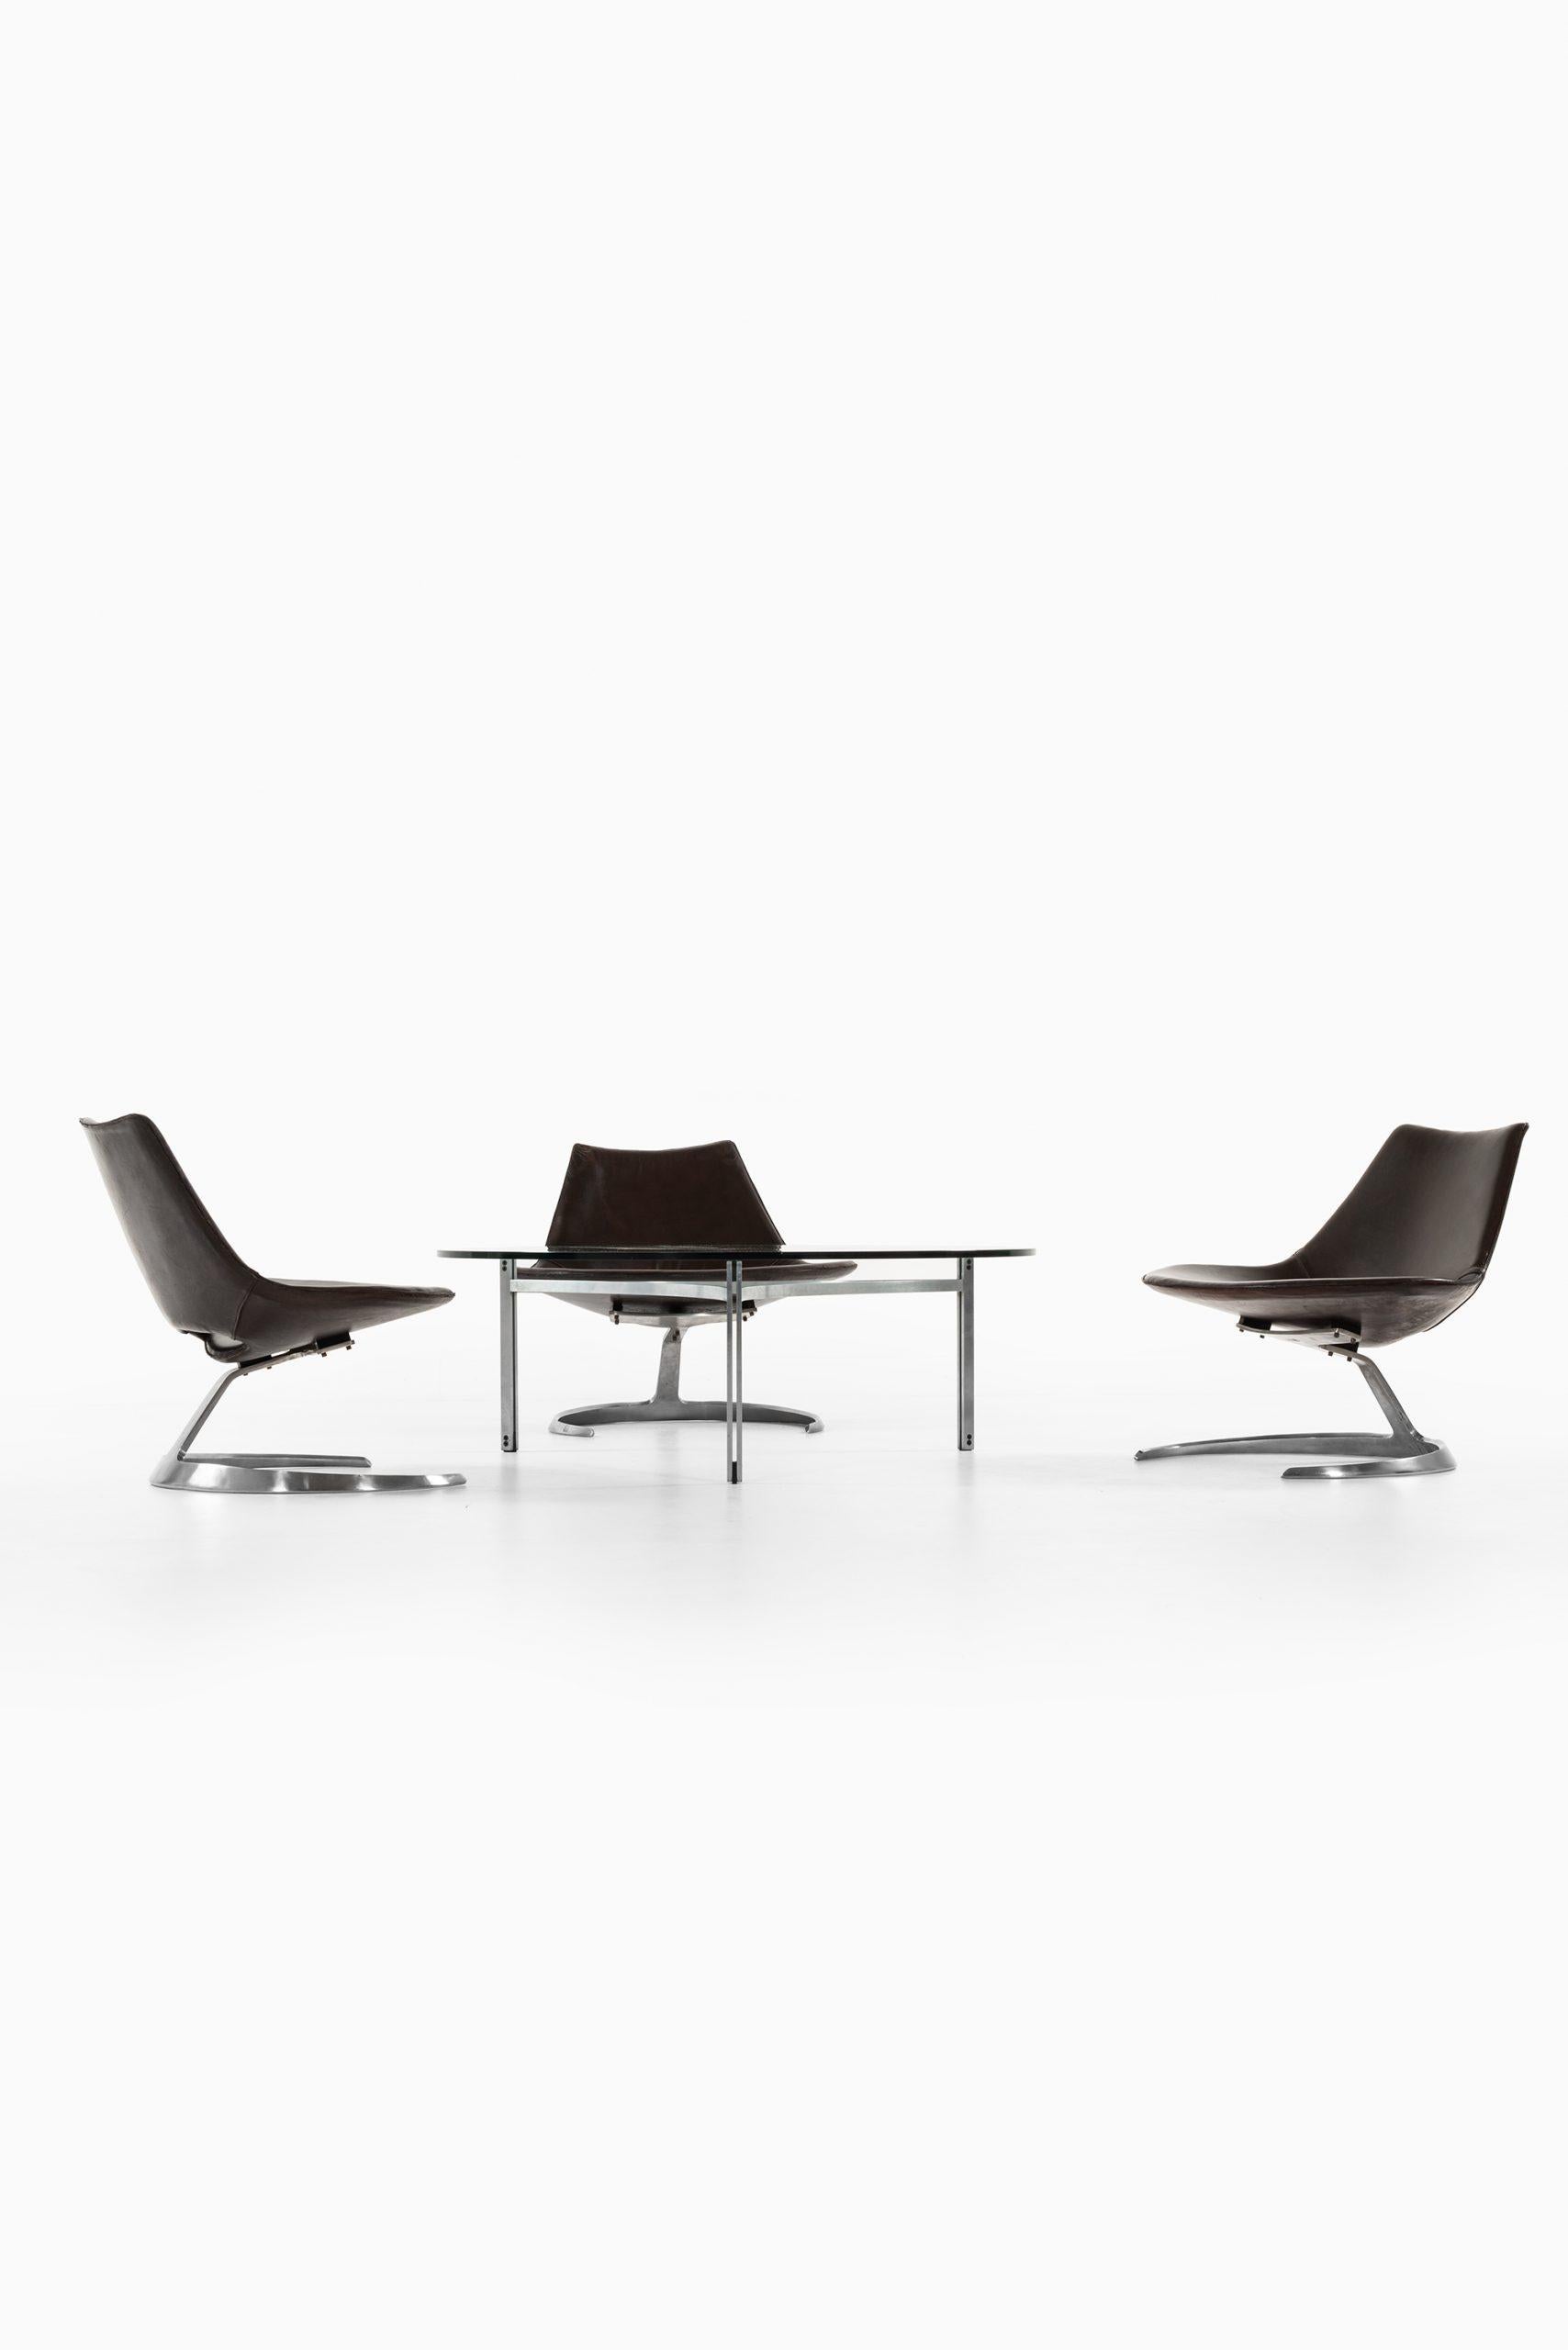 Preben Fabricius & Jørgen Kastholm Seating Group by Ivan Schlecter in Denmark For Sale 3